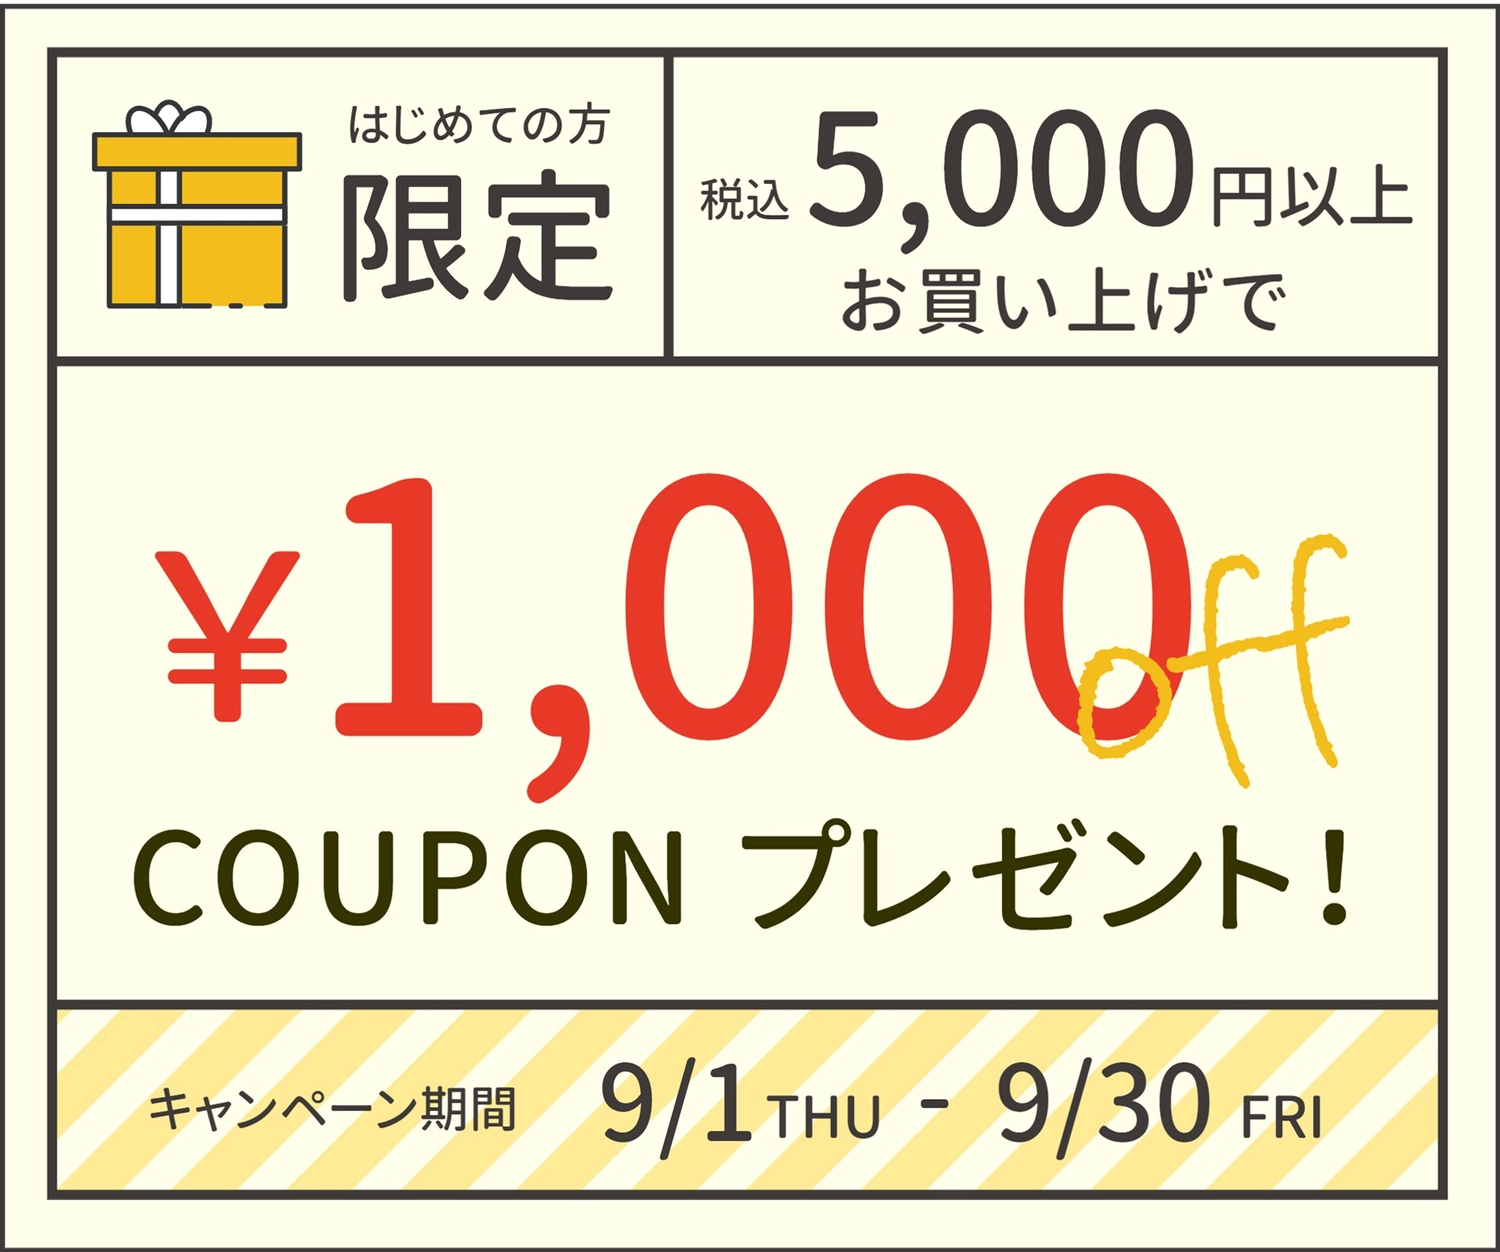 五千円で千円オフクーポンプレゼント, off, new member, shop, Coupon template